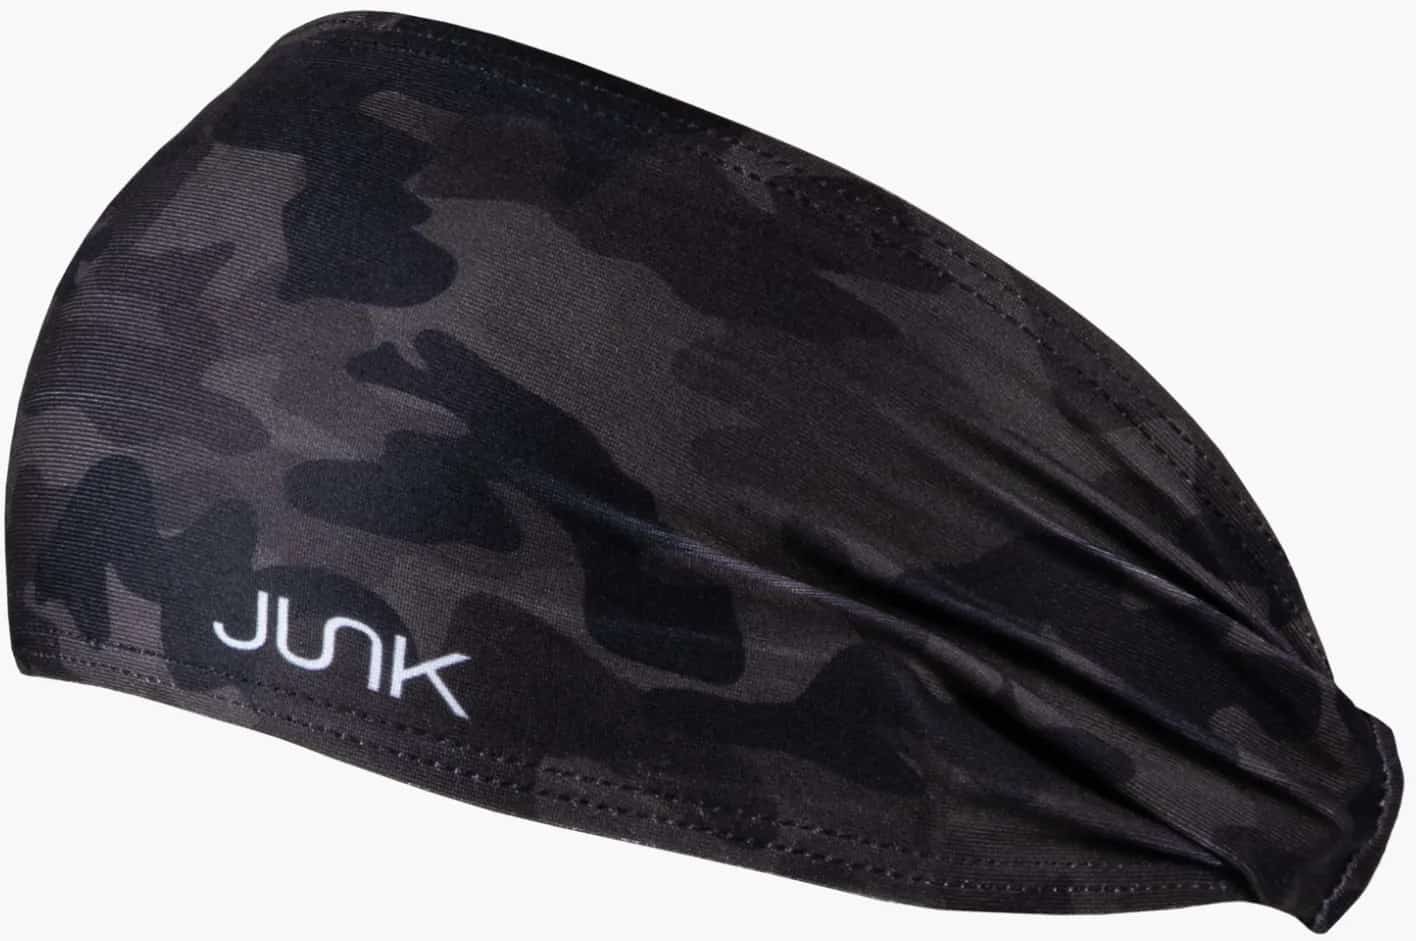 Rogue Junk Head Band black camo 2